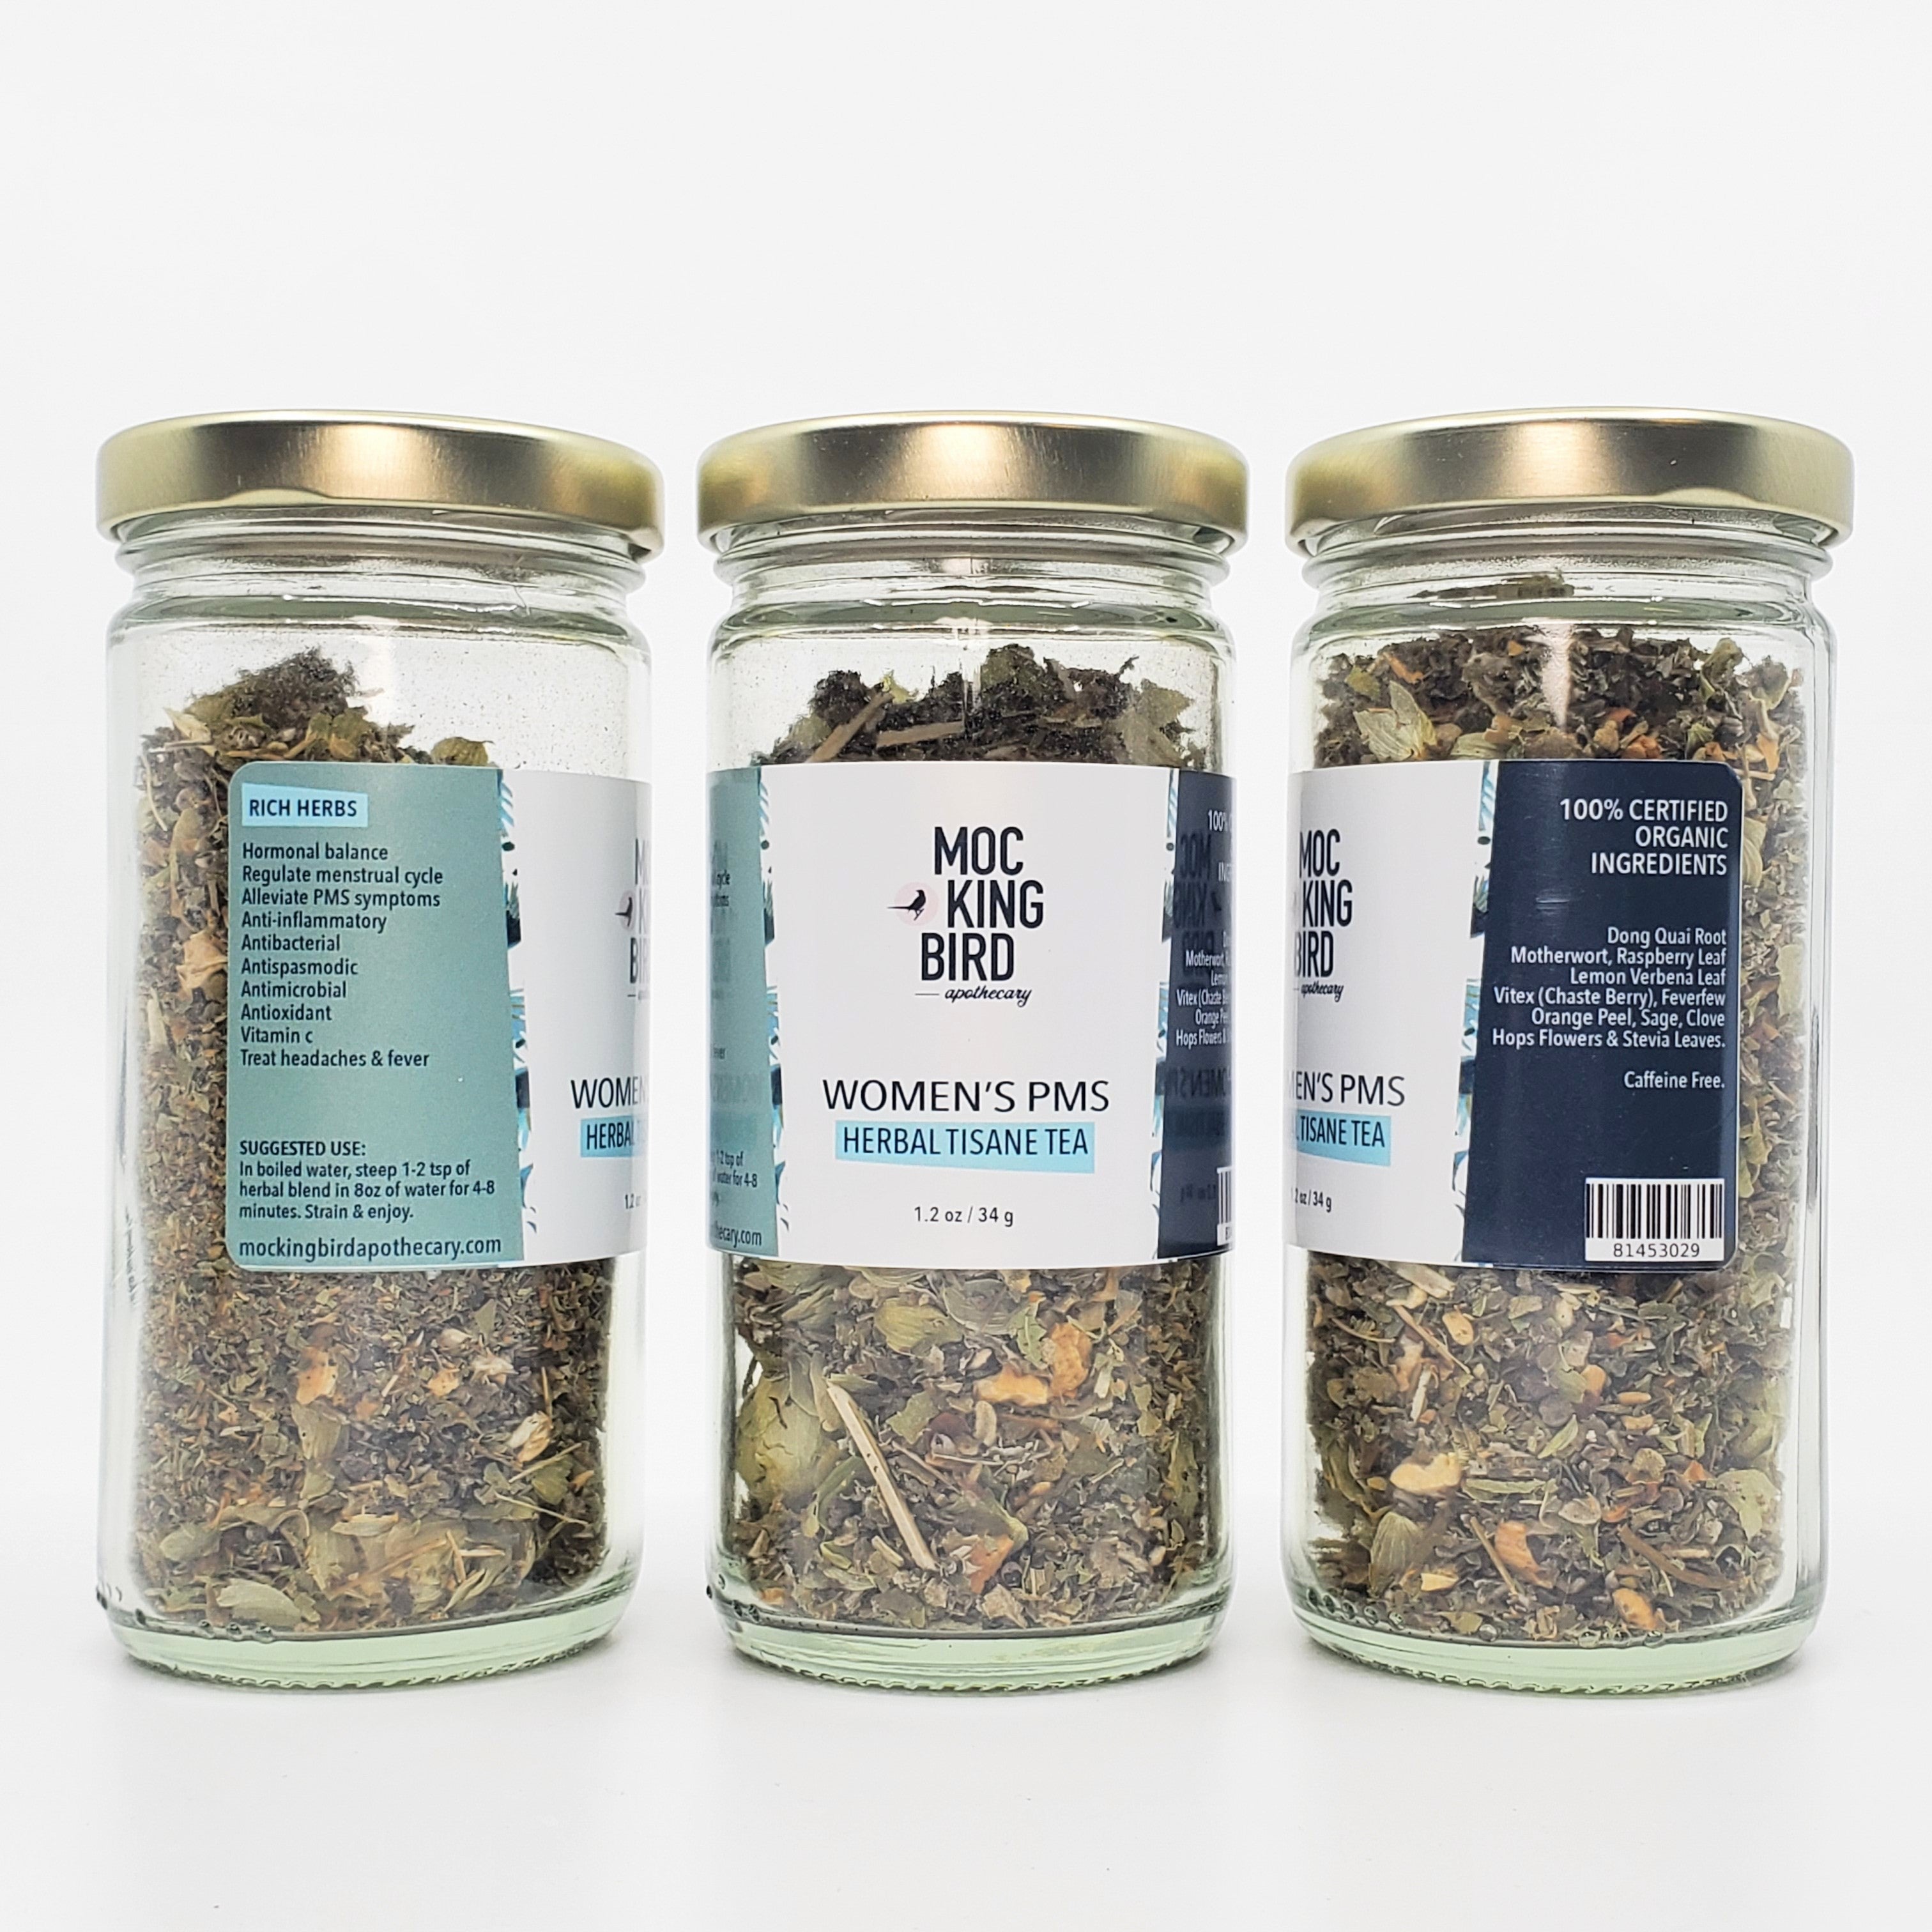 Women's PMS Herbal Tisane Tea - The Mockingbird Apothecary & General Store